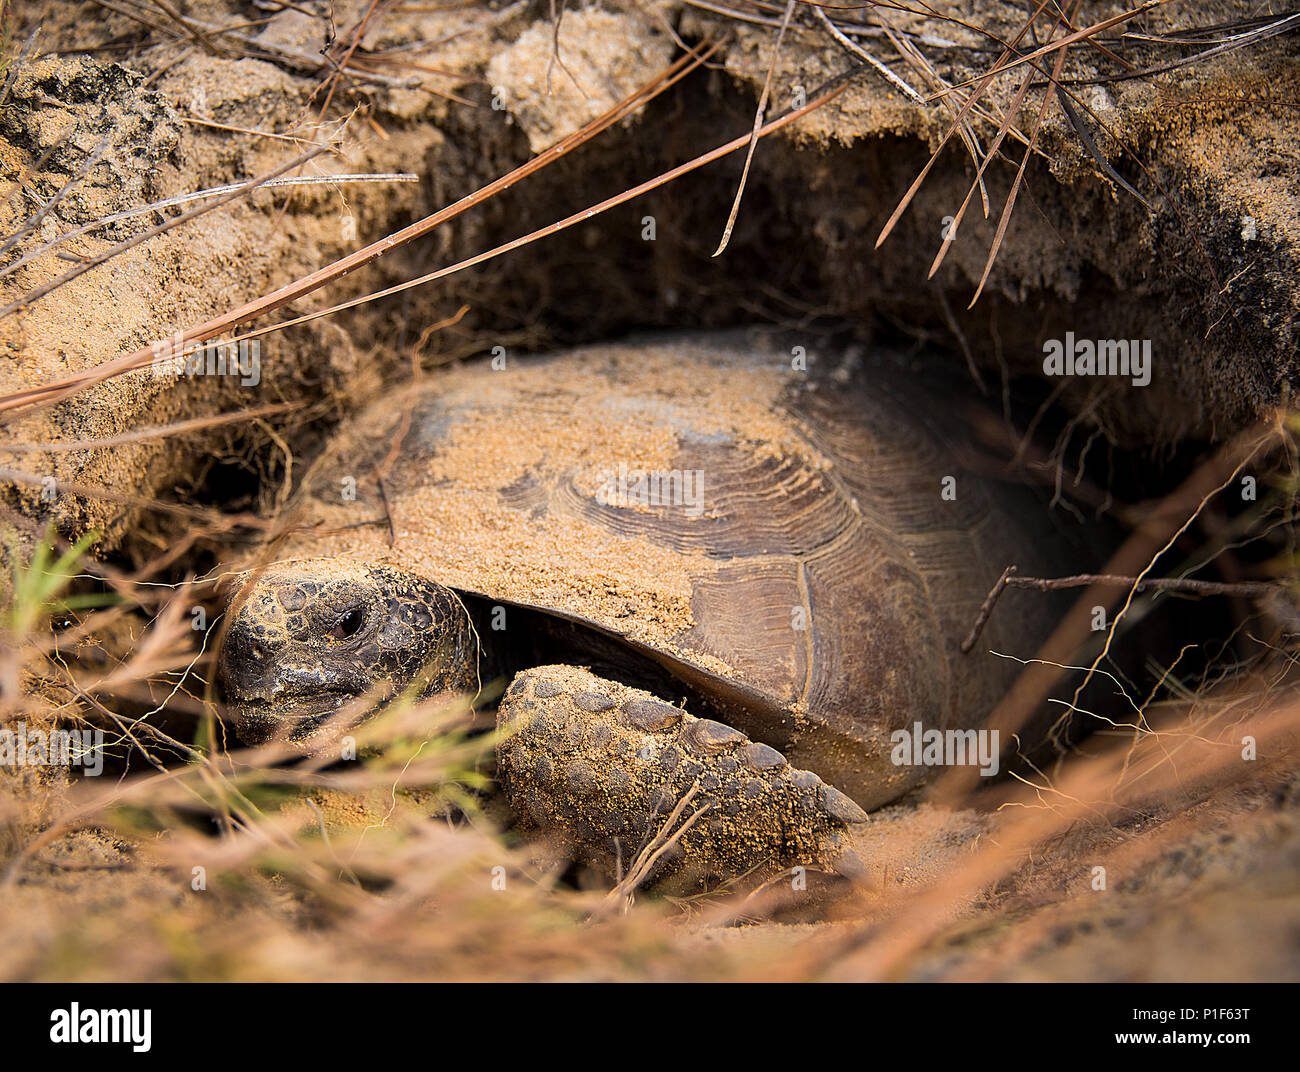 Спячка сухопутной черепахи. Среднеазиатская черепаха в спячке. Черепаха в норе. Спячка животных.